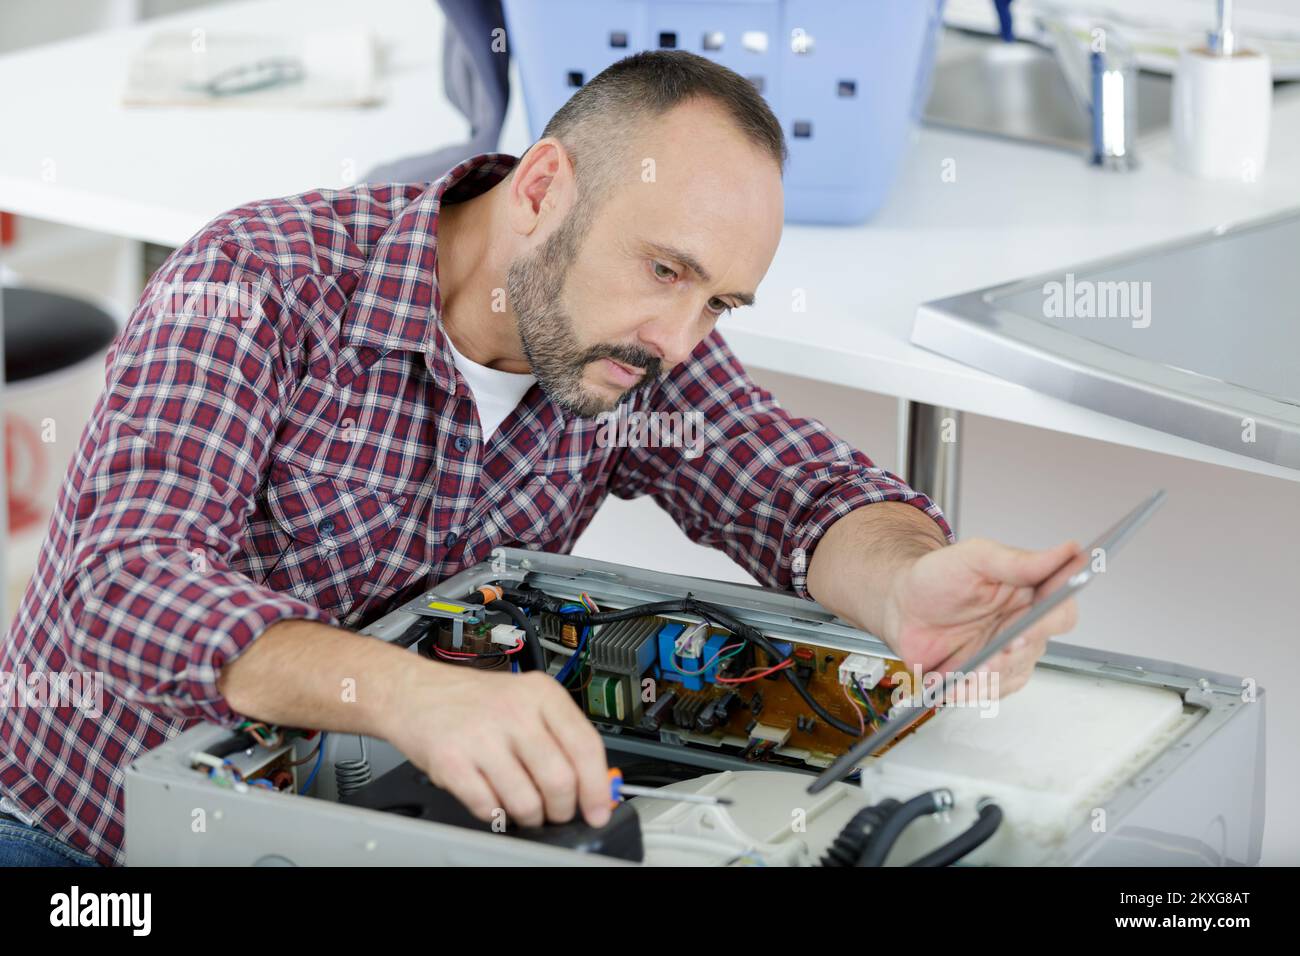 Erfahrener Servicemitarbeiter, der an der Appliance arbeitet und ein Tablet hält Stockfoto